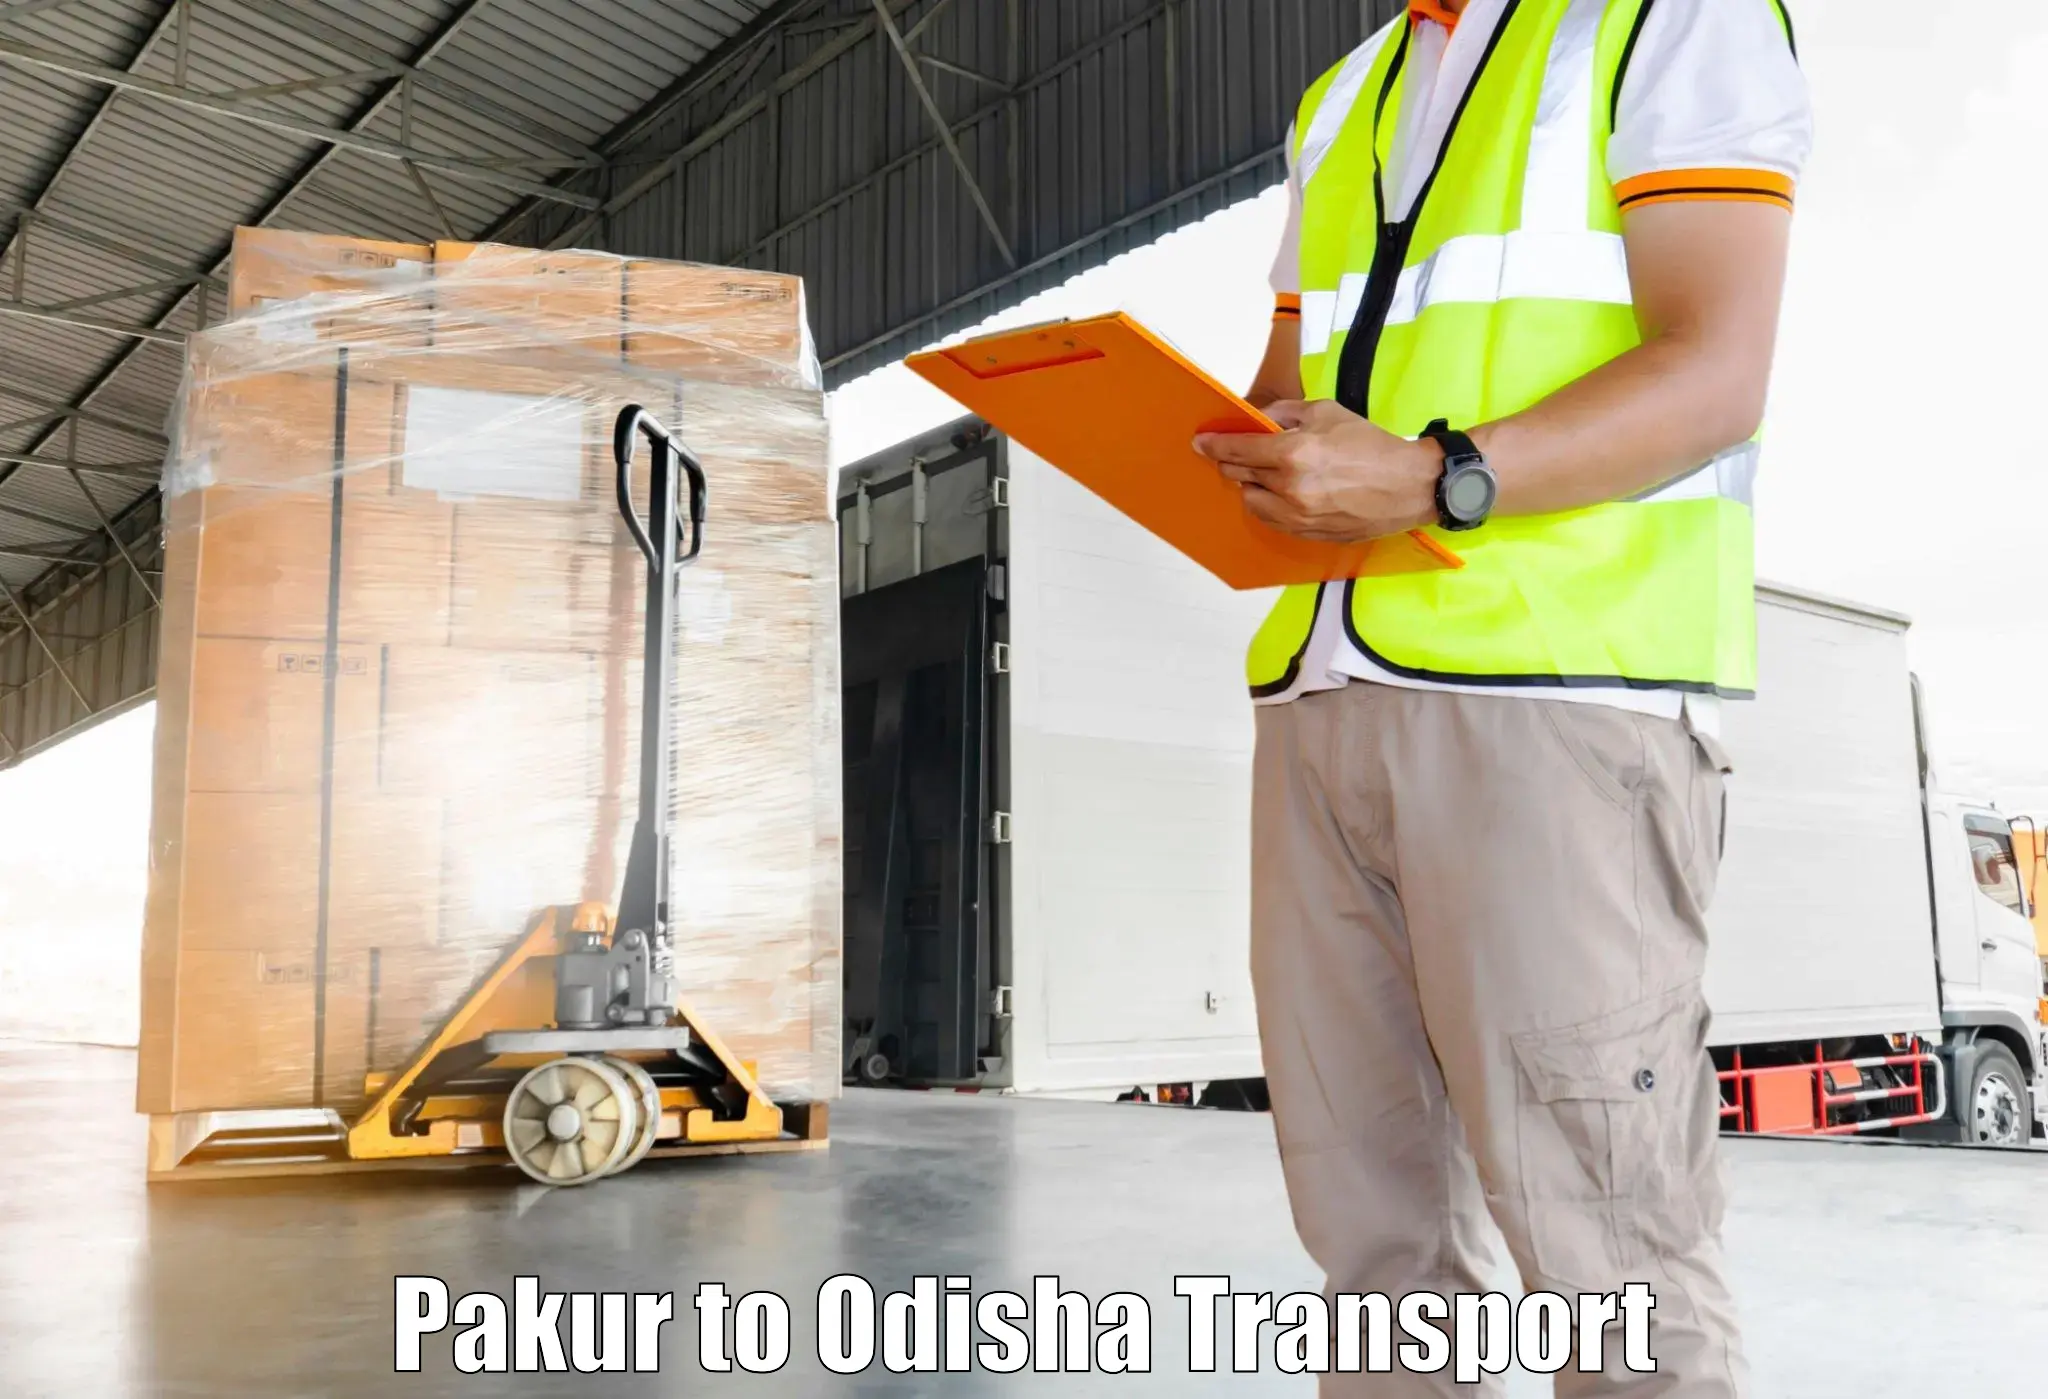 Nearby transport service Pakur to Balikuda